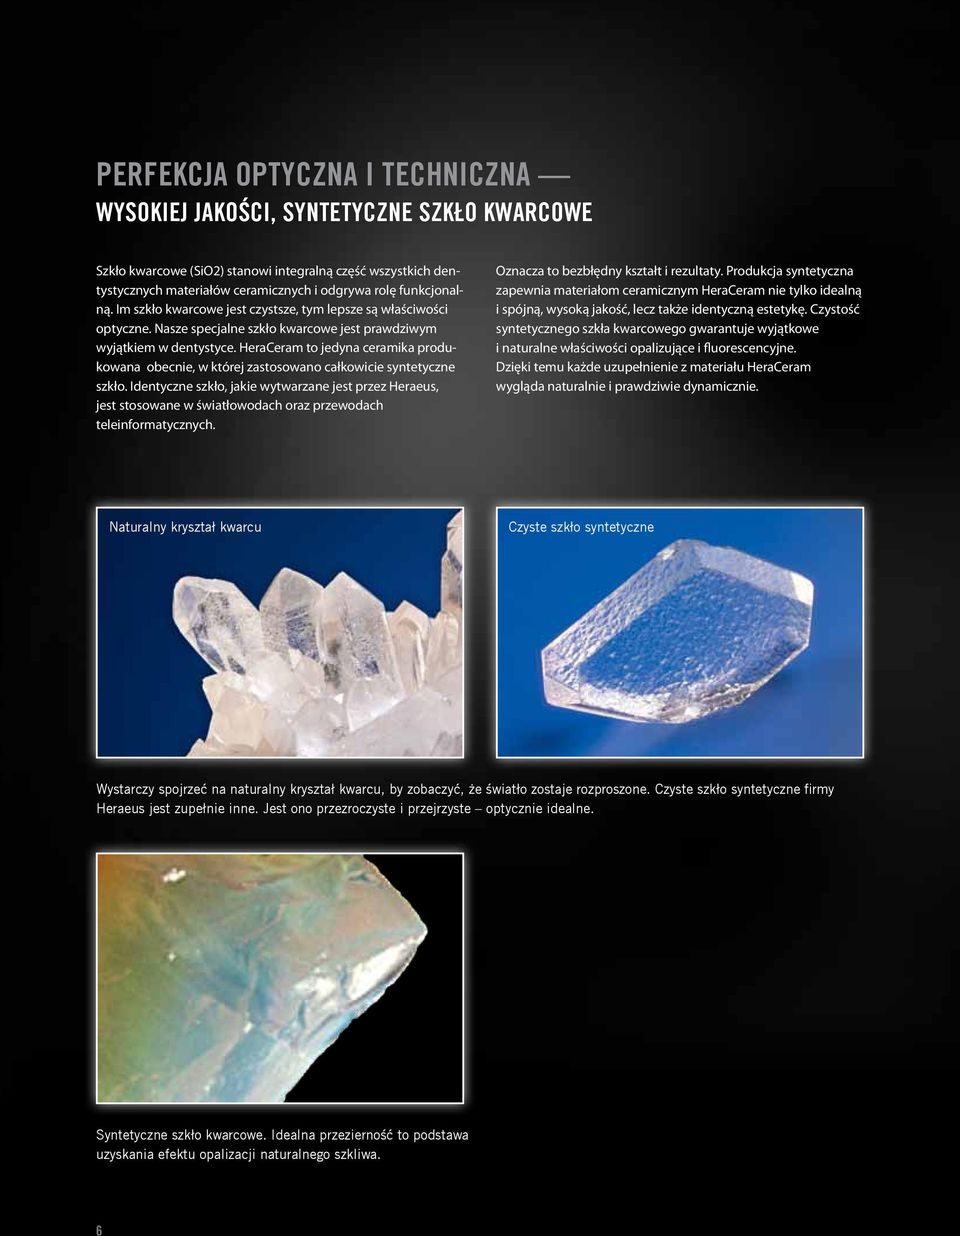 HeraCeram to jedyna ceramika produkowana obecnie, w której zastosowano całkowicie syntetyczne szkło.